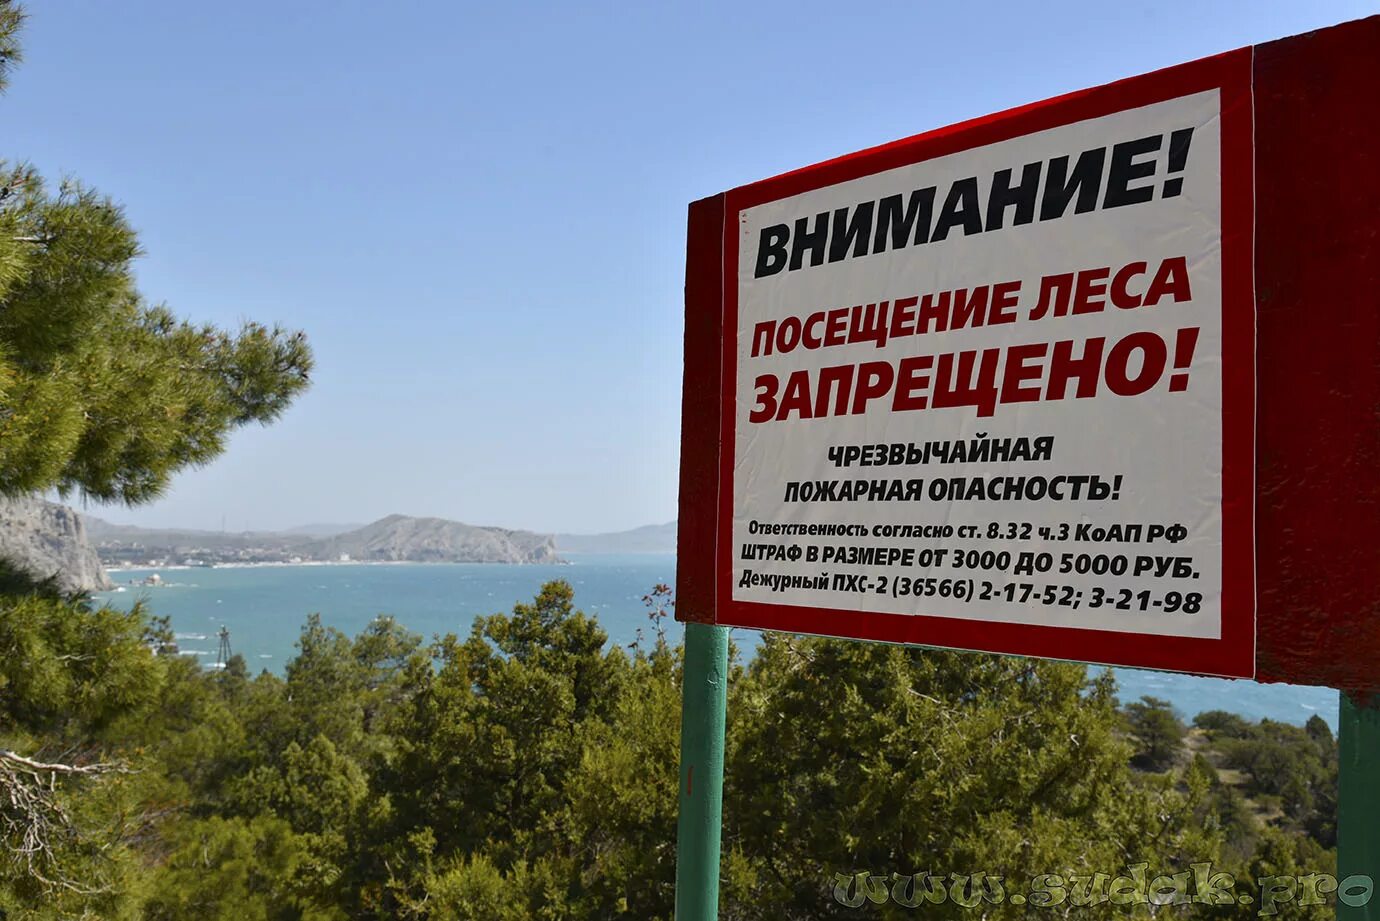 Посещение лесов запрещено. Леса закрыты для посещения. Запрещено посещать лес в Крыму. Запрет на посещение лесов.